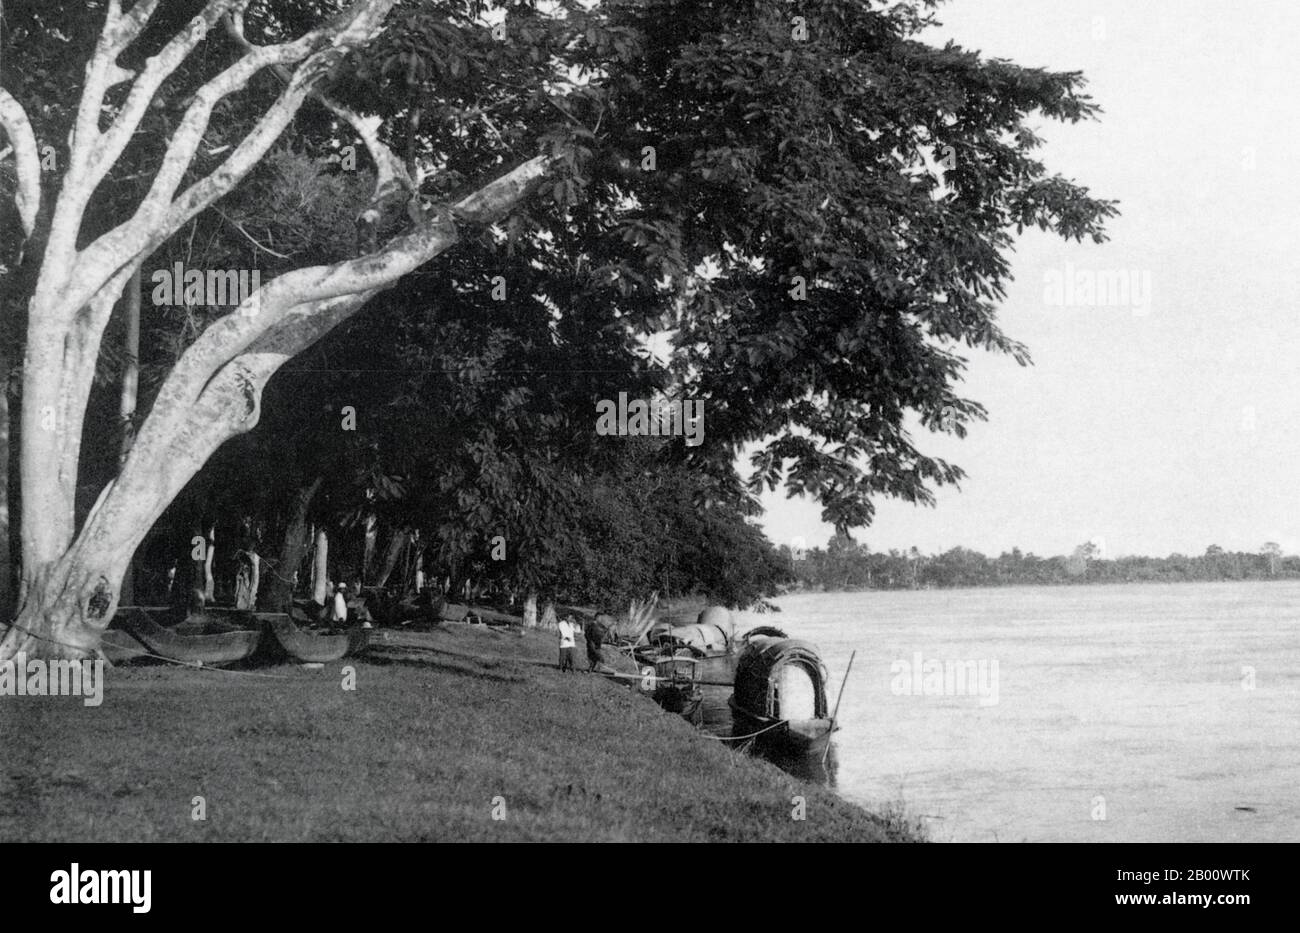 Laos: Una chiatta ormeggiata dalla riva del fiume a Vientiane nel 1901. Vientiane, ex Sri Sattanak, fu rasa al suolo e saccheggiata dagli eserciti siamesi nel 1827. La città fu lasciata in grave disordine e divenne sovra-cresciuta e quasi depopolata fino all'arrivo dei colonizzatori francesi e alla presa in consegna della regione nel 1893. Vientiane divenne la capitale del protettorato francese del Laos nel 1899 e fu ricostruita con templi buddisti rinnovati circondati da architettura francese. Vientiane rimase il ‘chef-lieu’, la capitale del distretto, del Laos francese fino al 1949. Foto Stock